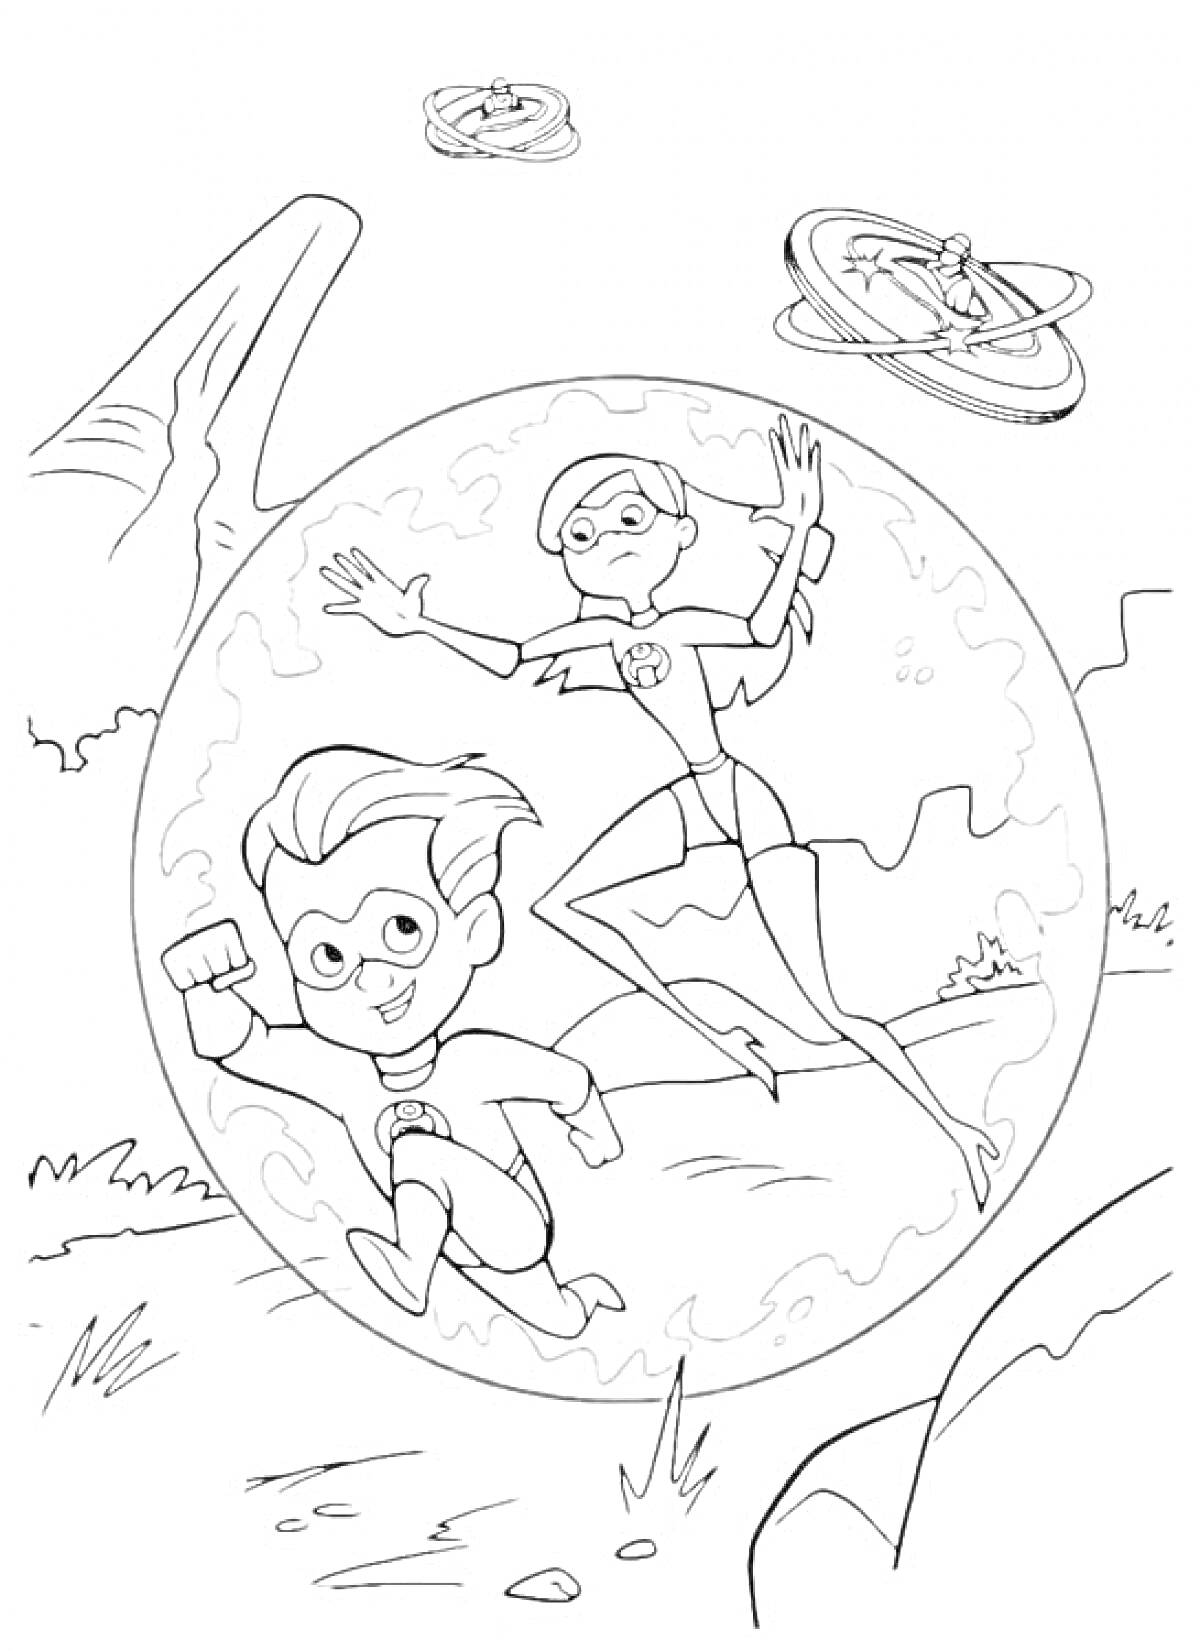 РаскраскаМальчик и девочка в супергеройских костюмах в пузыре, два летательных устройства на заднем плане 